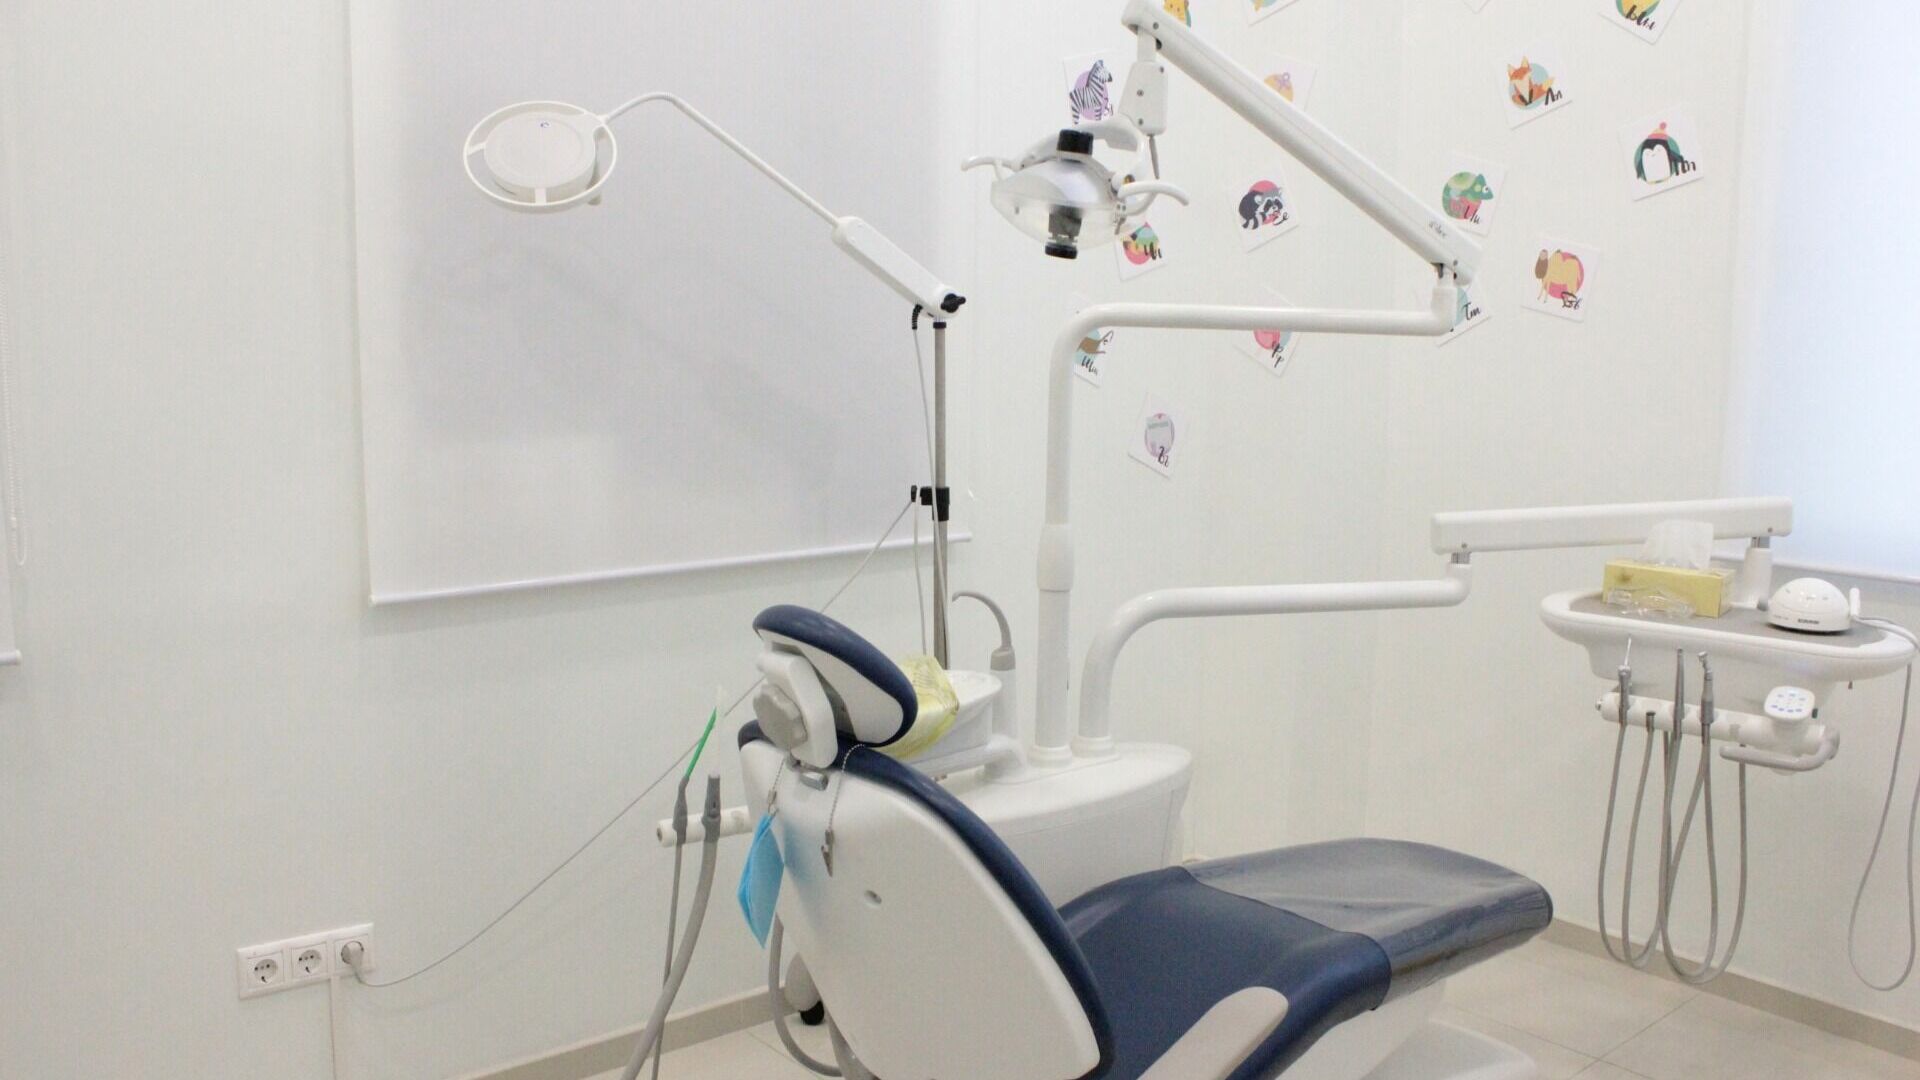 Областная стоматология опровергла заявление об отказе в оказании медпомощи ребенку